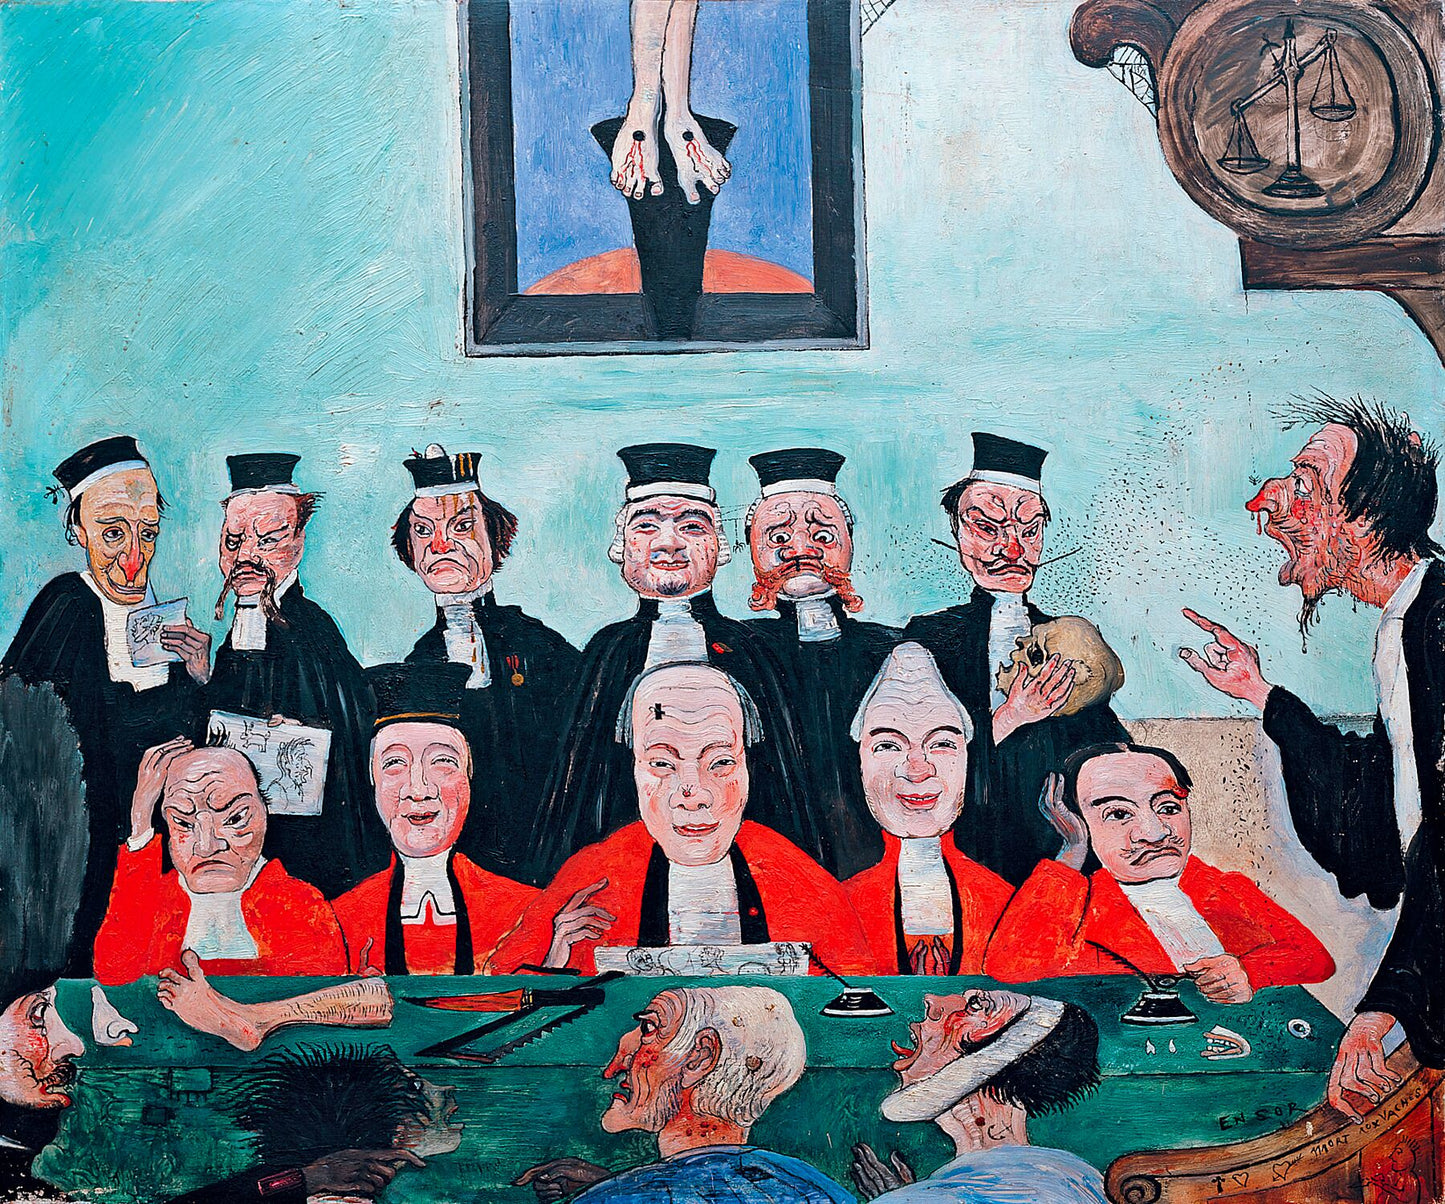 Good Judges by James Ensor, 1891